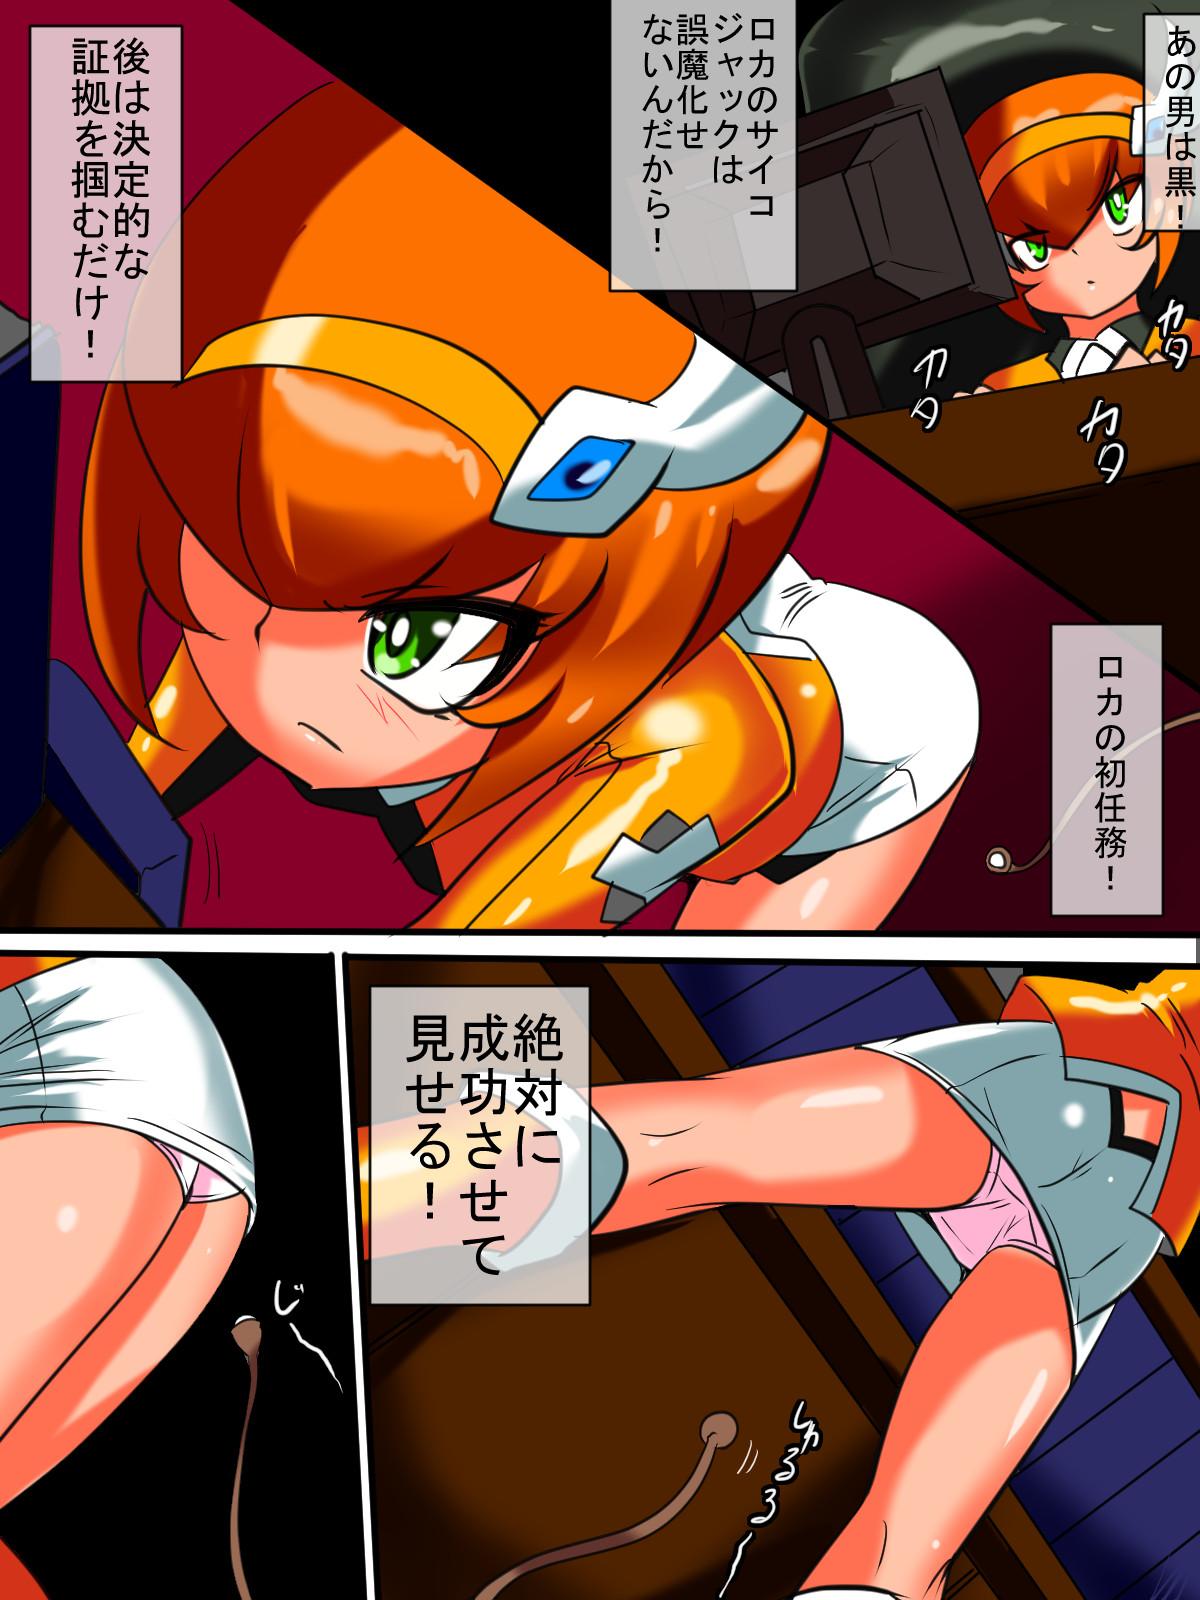 Family Ginga no Megami Netisu IV Daija Hen Zen - Ultraman Brazilian - Page 3